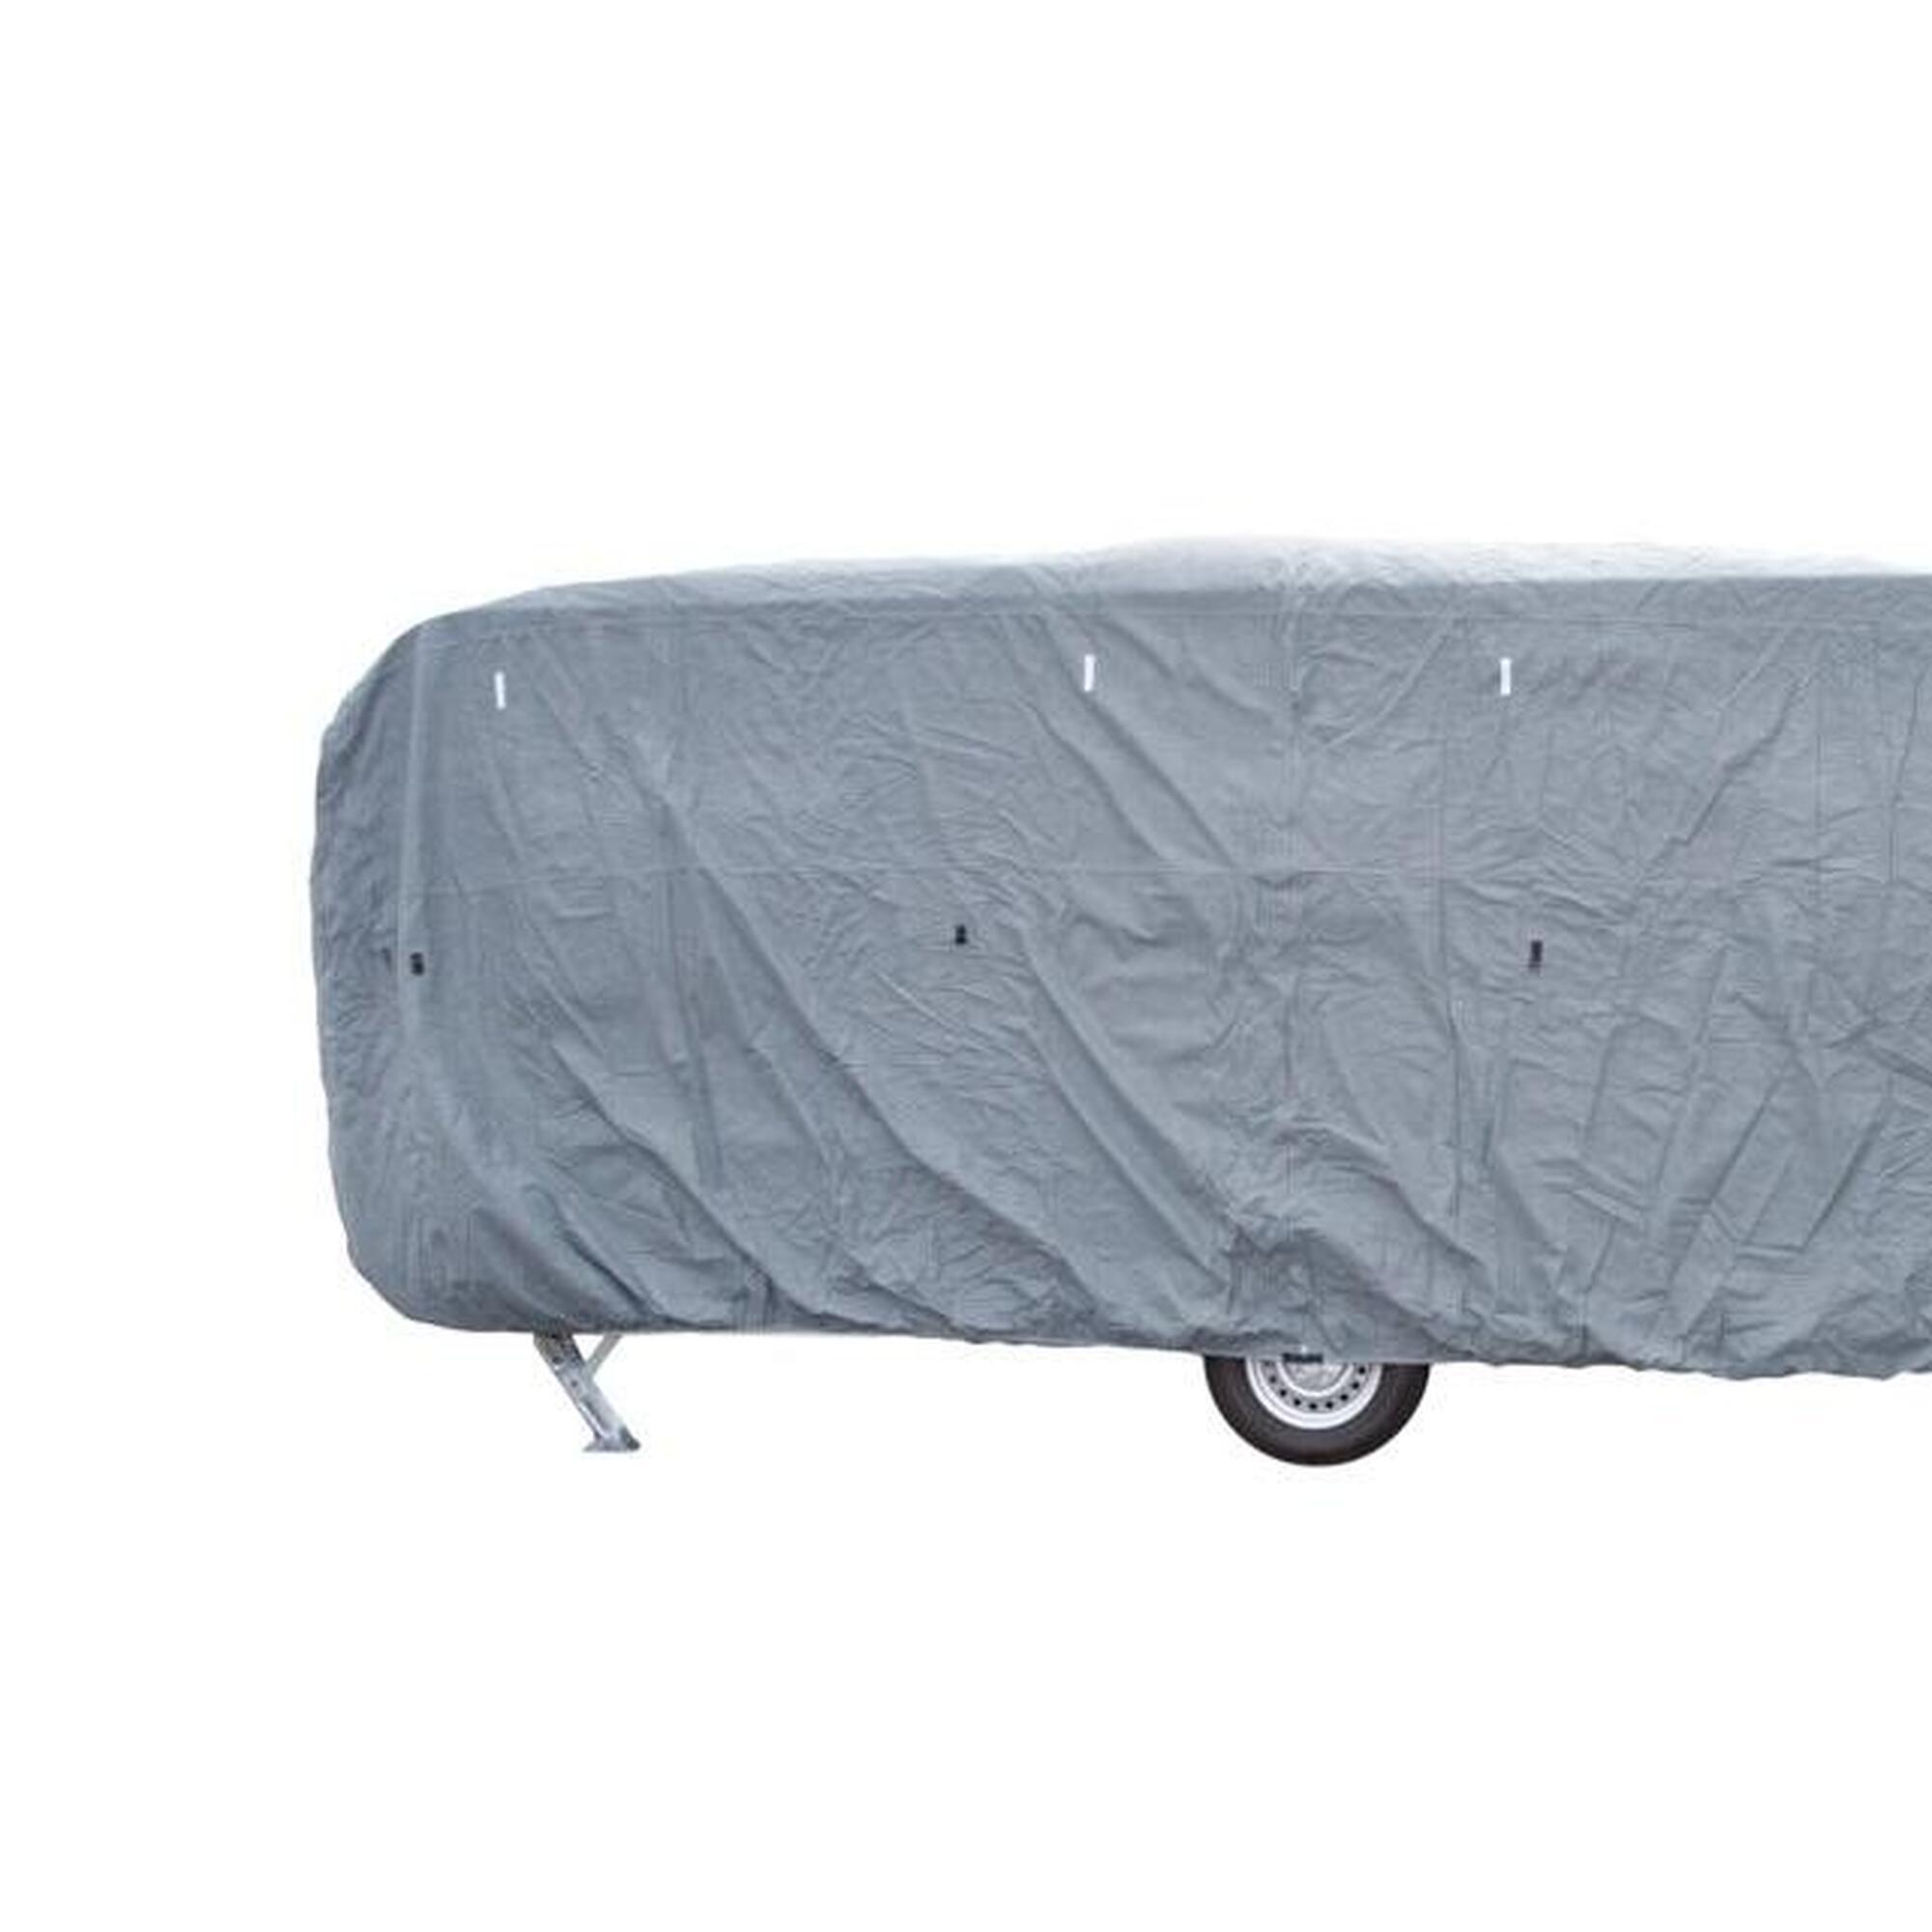 Travellife caravane couverture basic 550x250x220cm